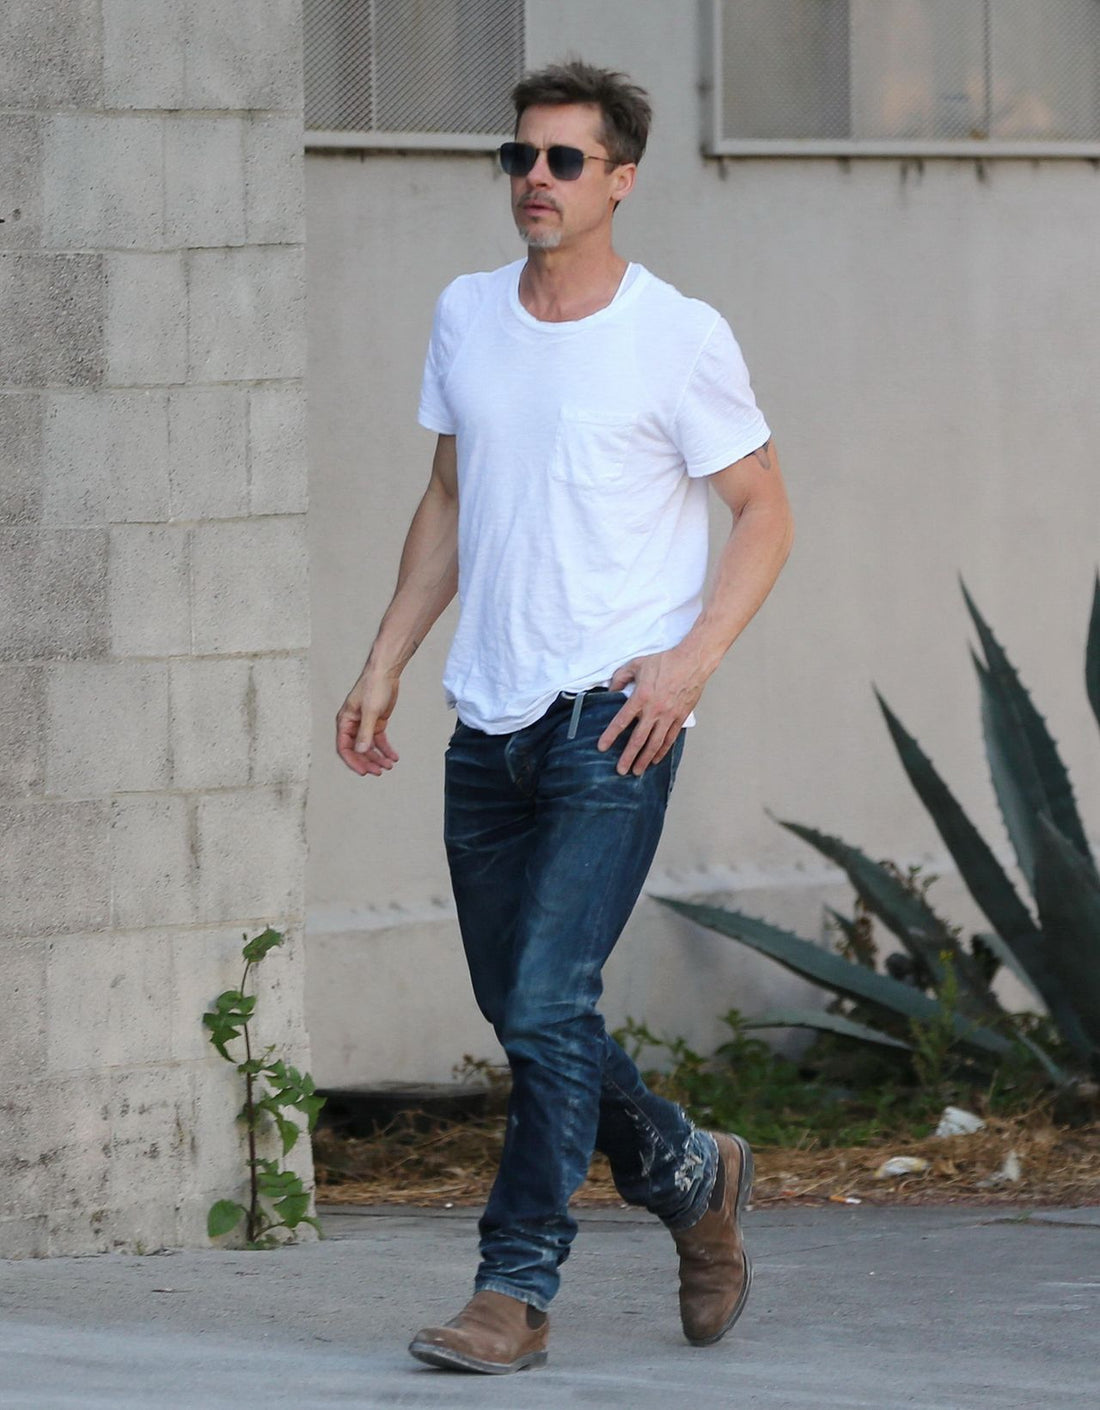 Blundstone: Las botas que se han convertido en el calzado favorito de Brad Pitt